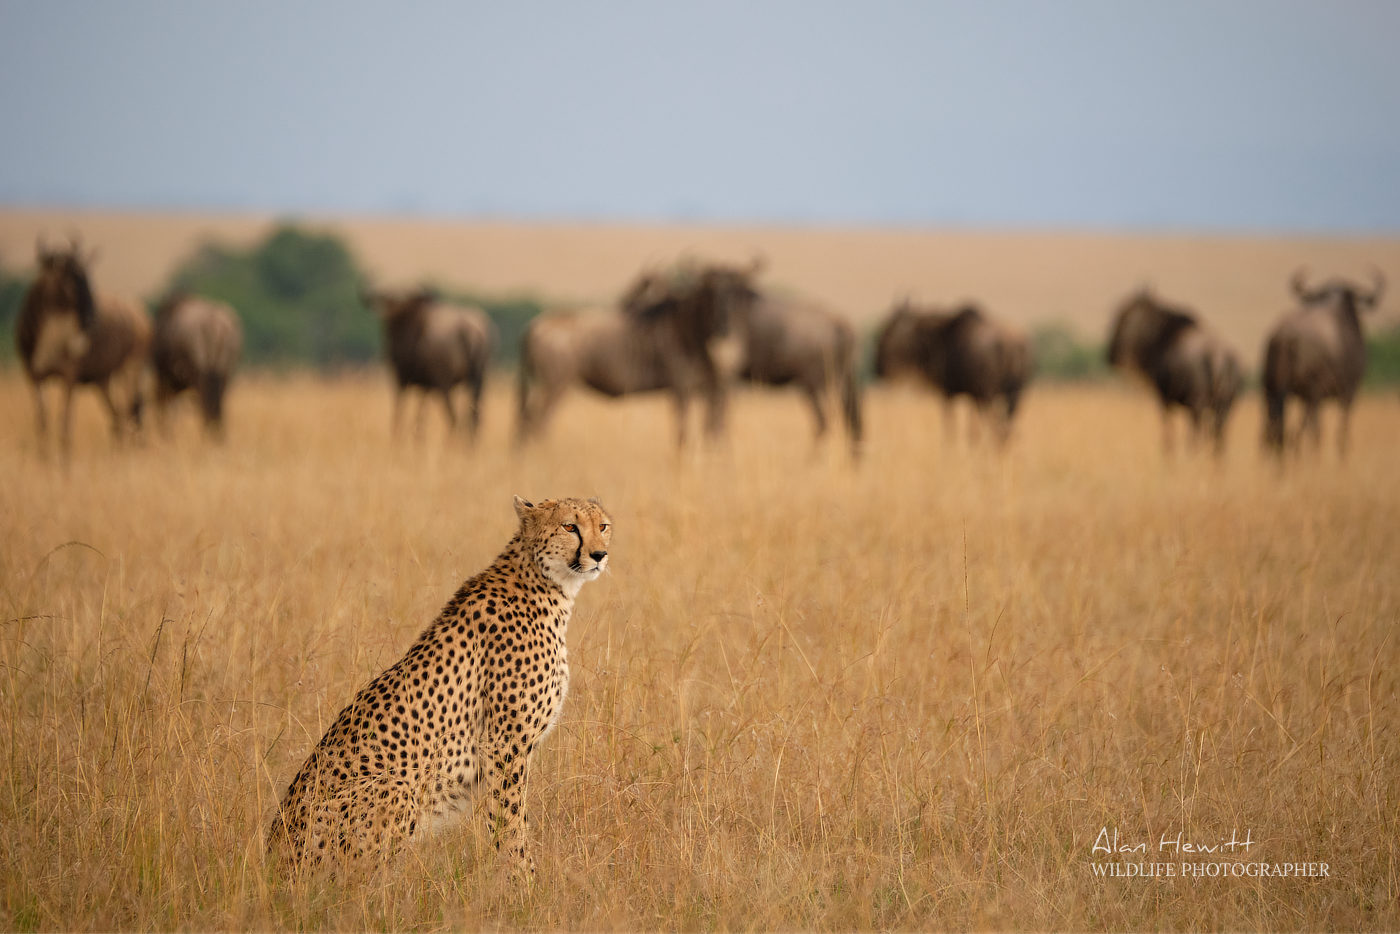 Cheetah and Wildesbeest Alan Hewitt Photography